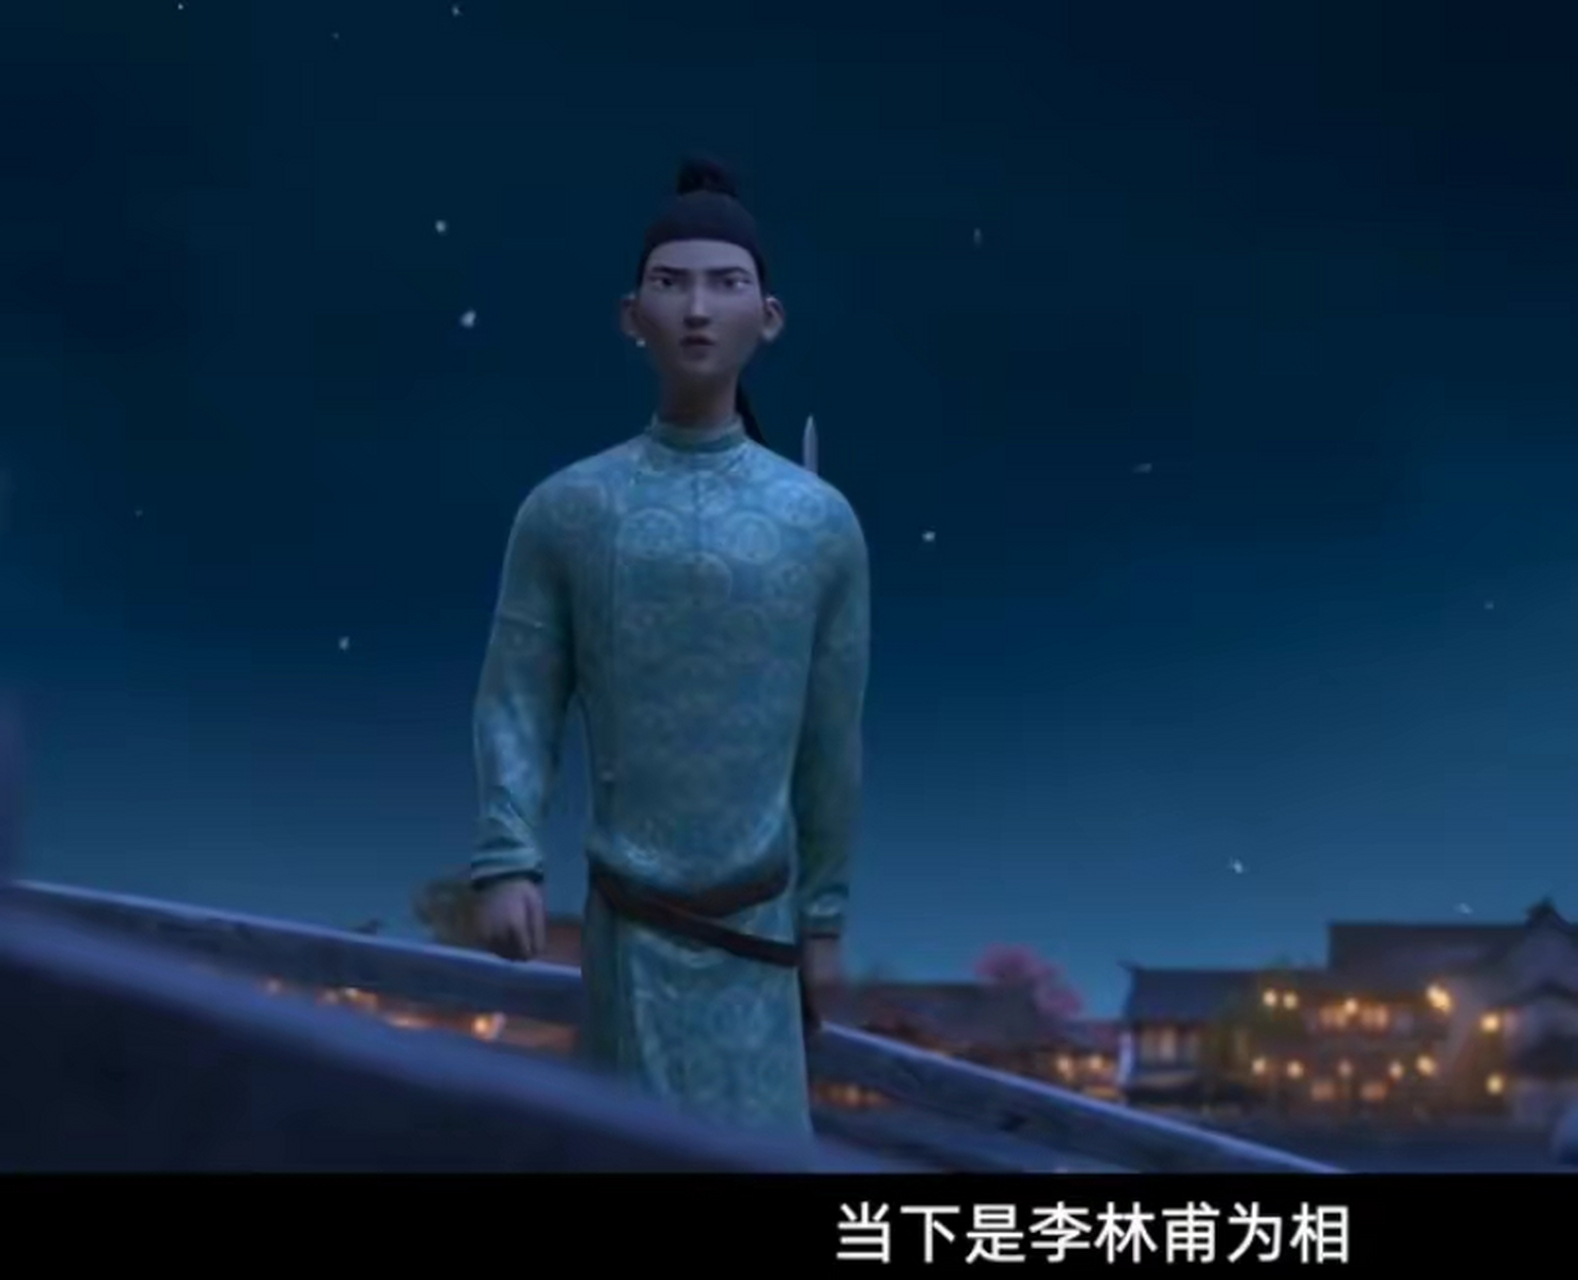 高适在扬州邂逅一位大唐奇女子裴十二,她的父亲是唐代著名将军裴旻,被